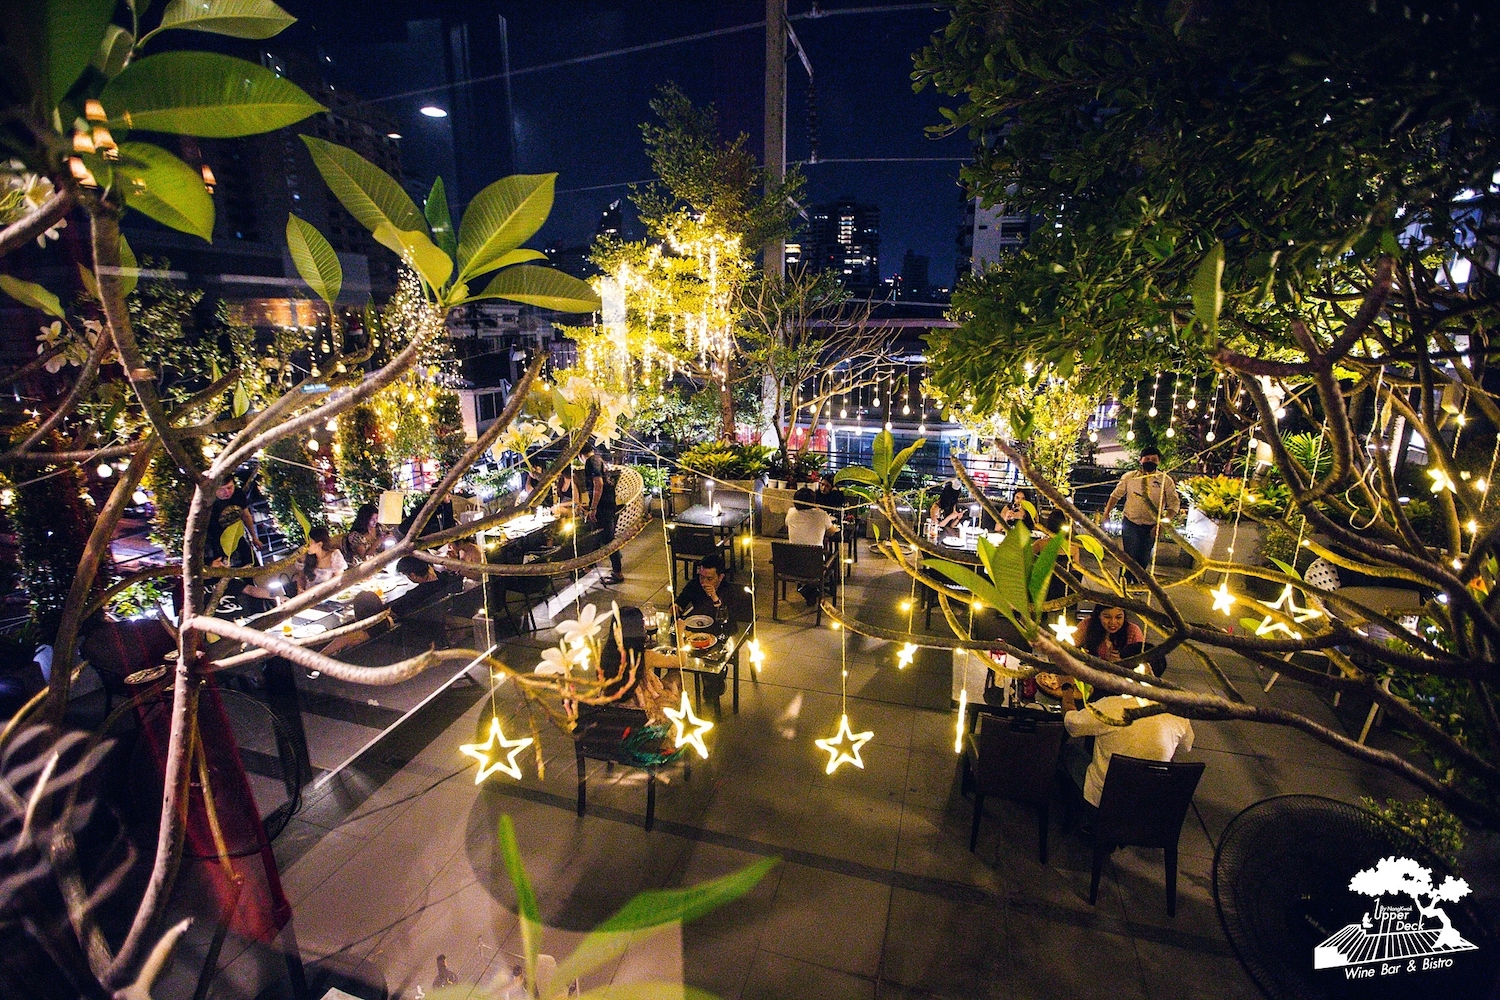 Ten Cafe’ Cocktail Bar Bangkok (Ten Cafe’ Cocktail Bar Bangkok) : กรุงเทพมหานคร (Bangkok)